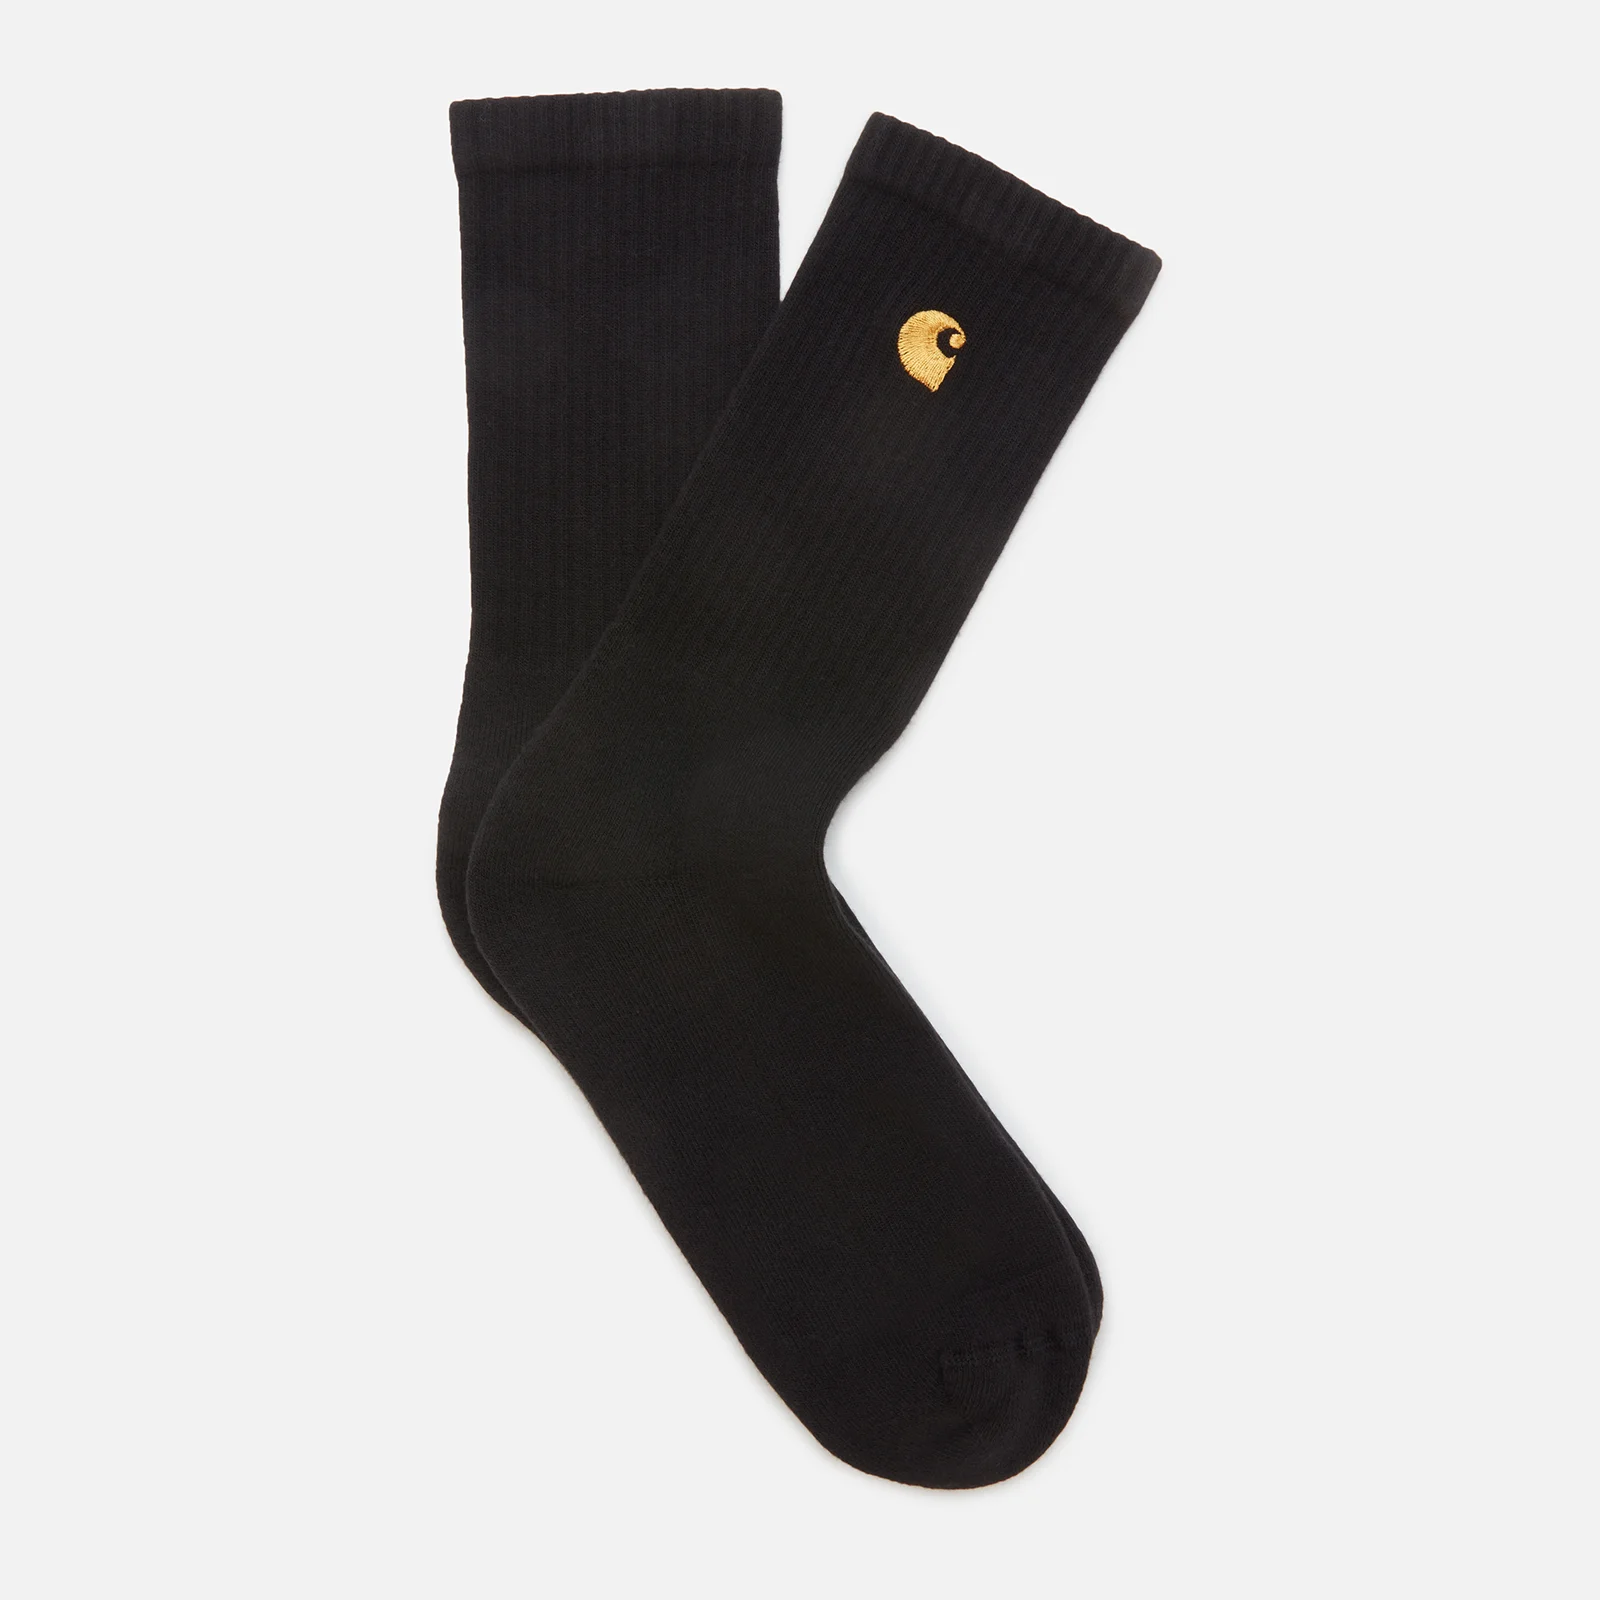 Carhartt WIP Men's Chase Socks - Black/White Image 1